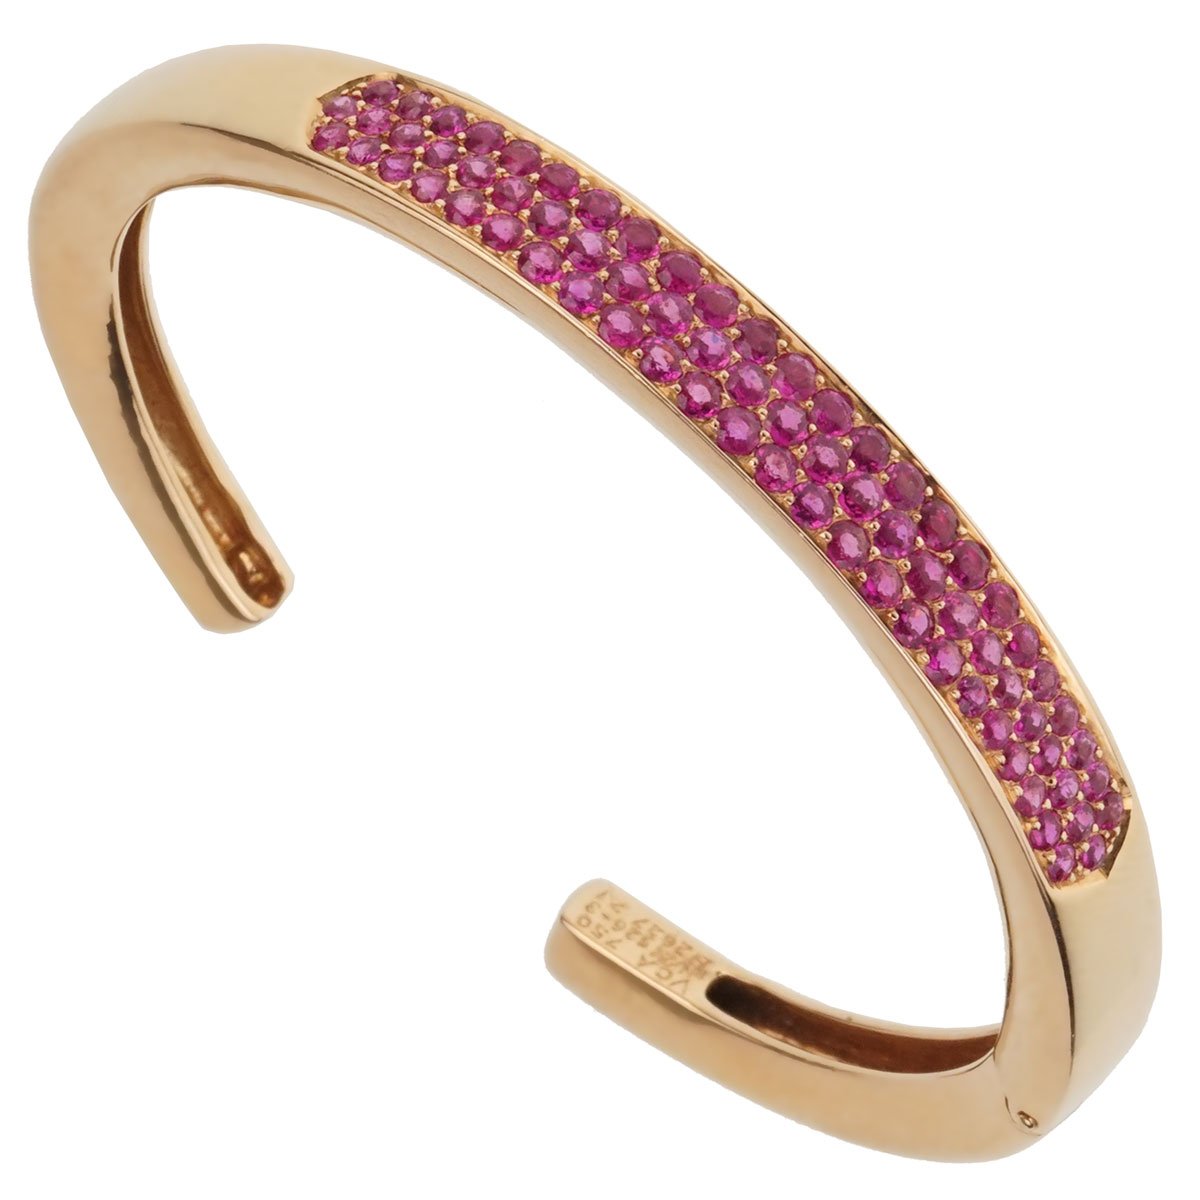 By hook or crook Rose Gold Bracelet at Rs 3936.00, Bracelet